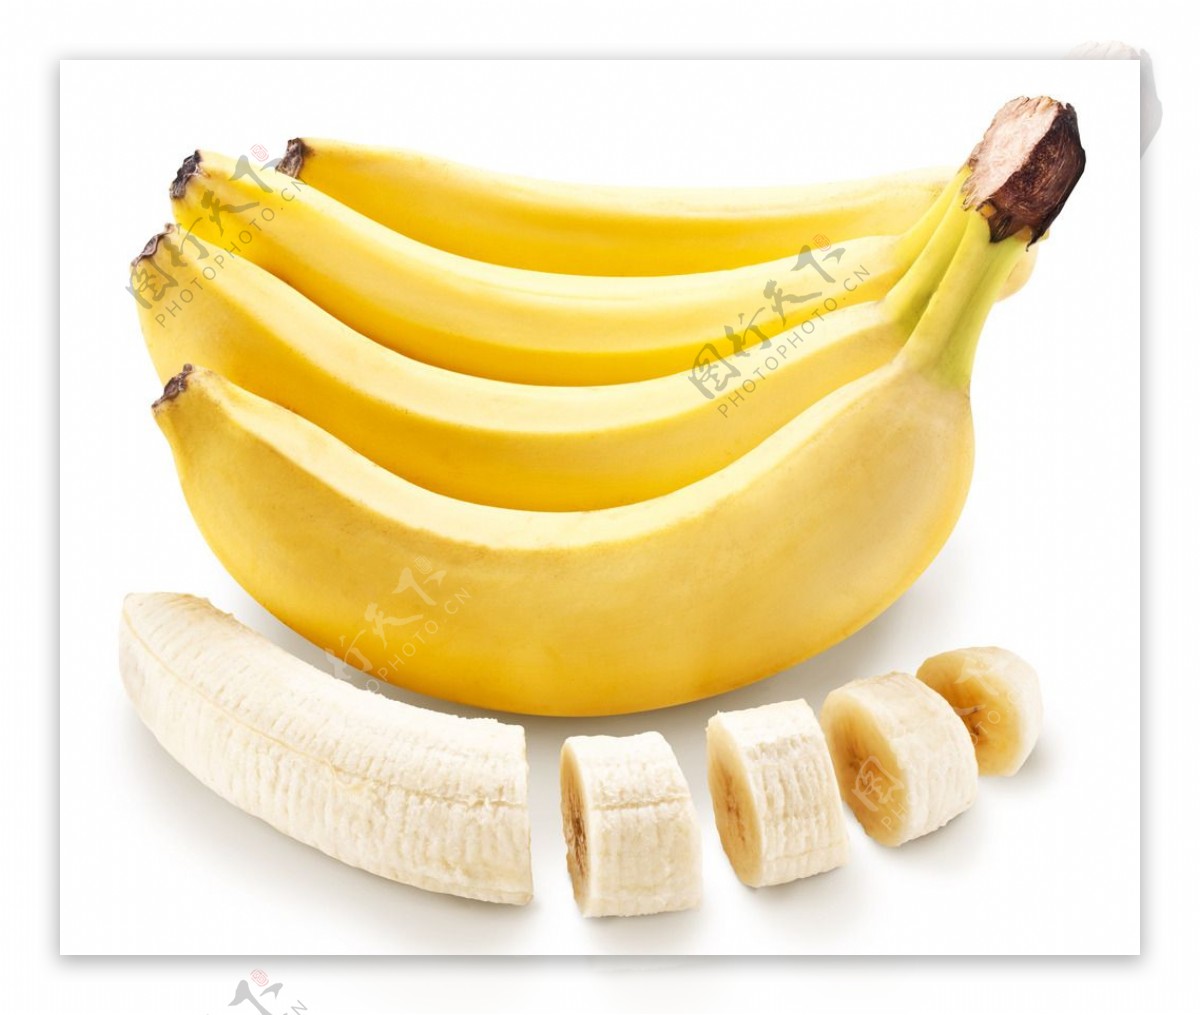 鲜黄色的香蕉高清摄影大图-千库网